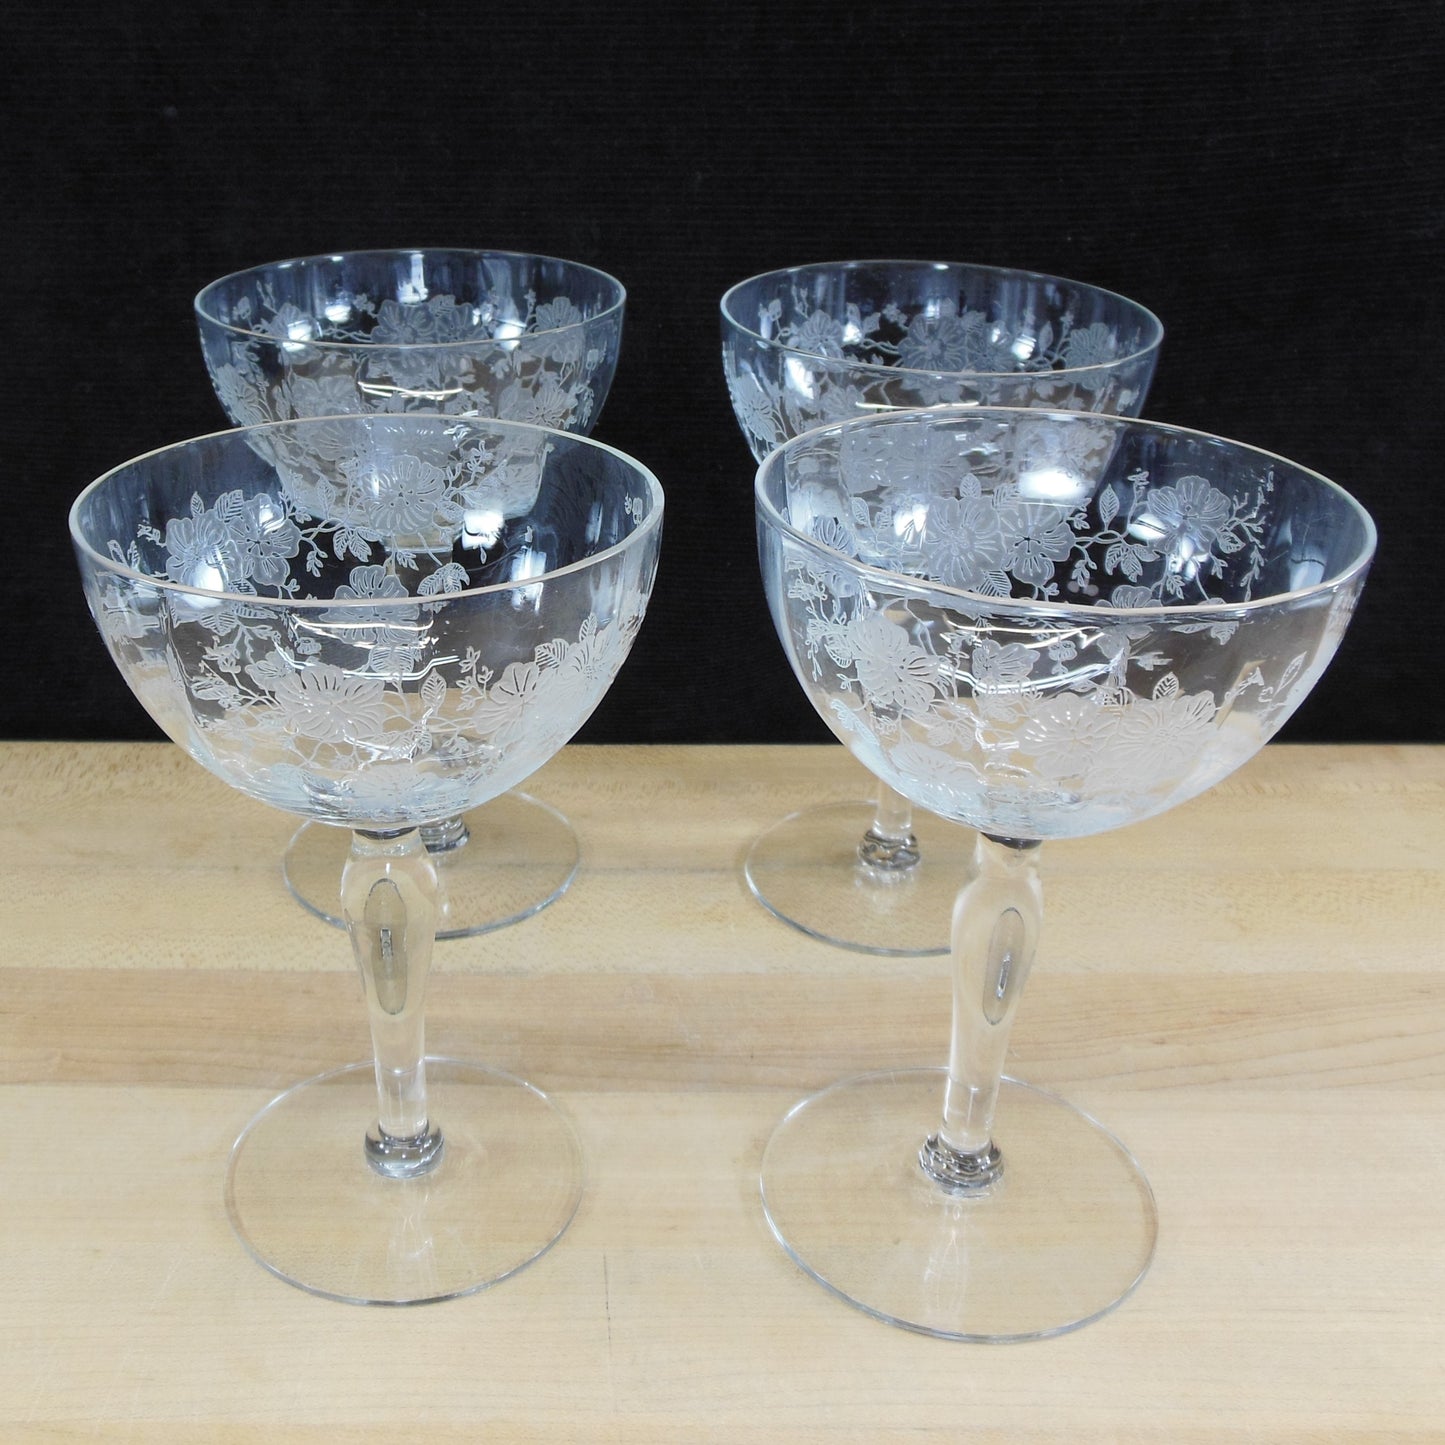 Unknown Maker UNK2629 Elegant Floral Etched Crystal Wine Glass Goblet - 4 Set